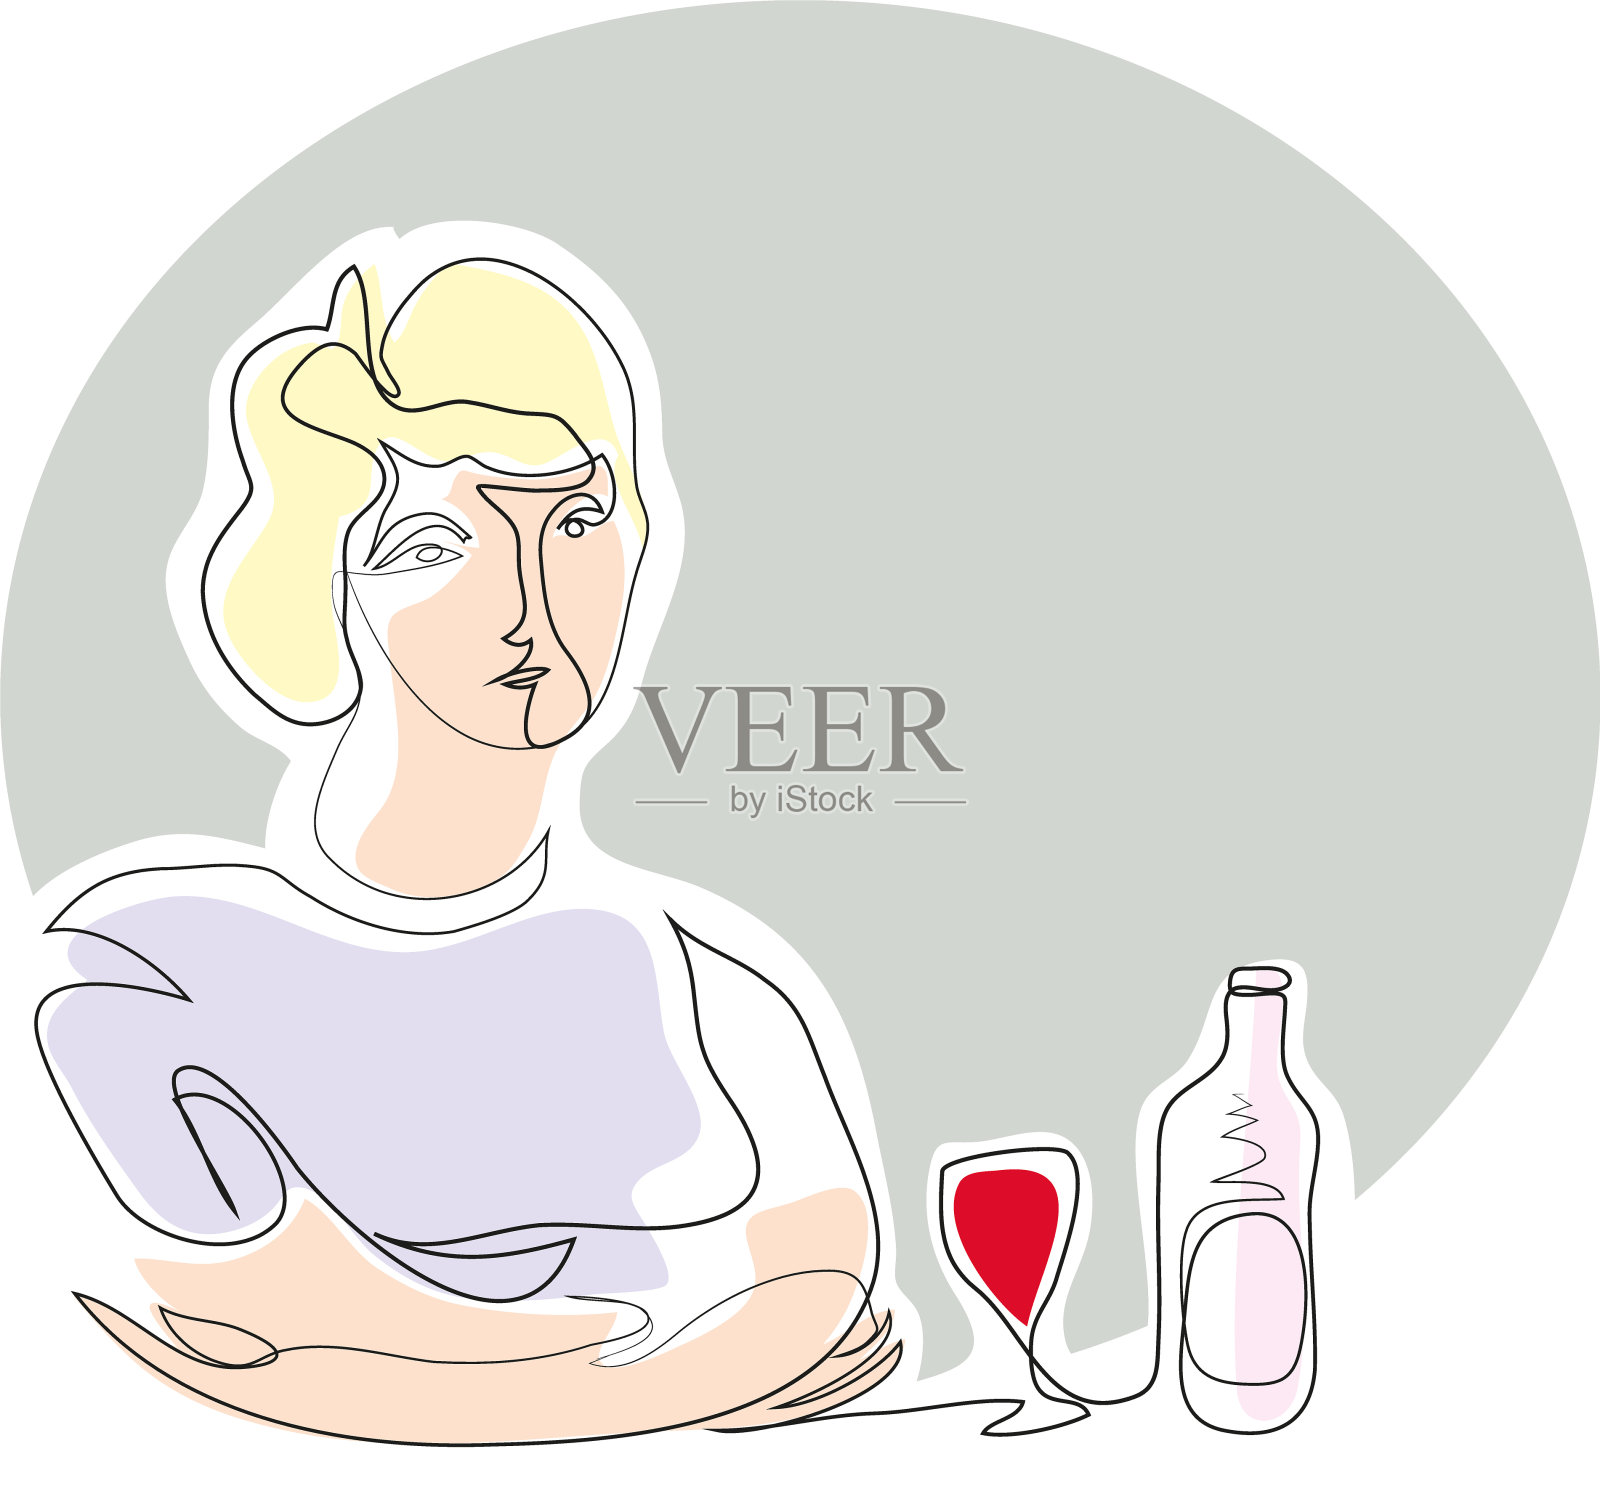 一个女性酗酒和酗酒成瘾的连续线条画插画图片素材